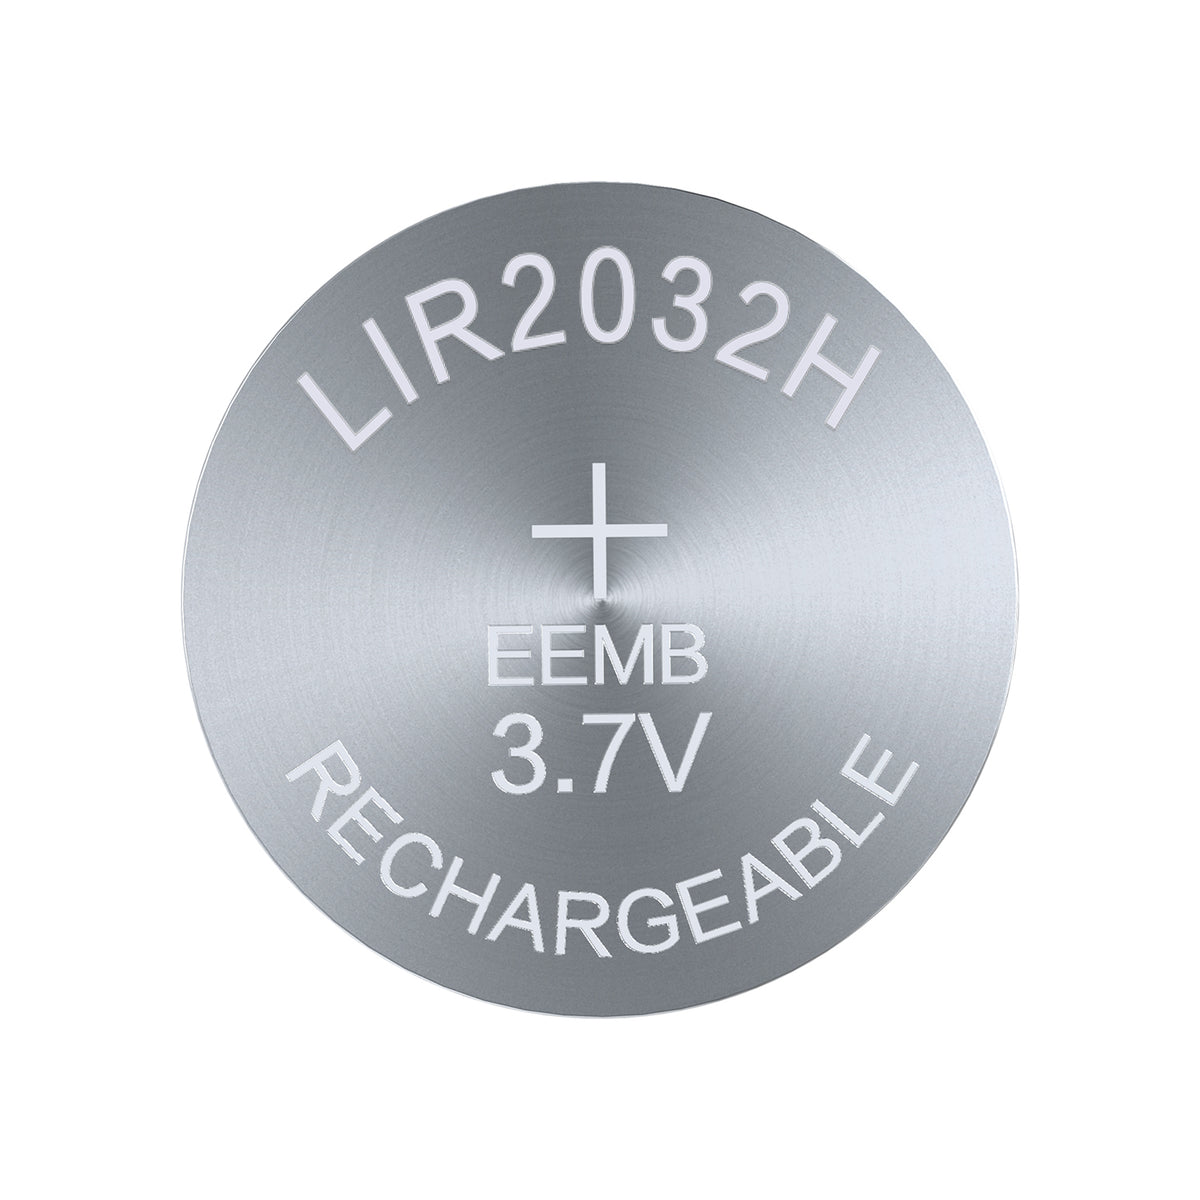 LIR2032H --  3.7V 70mAh